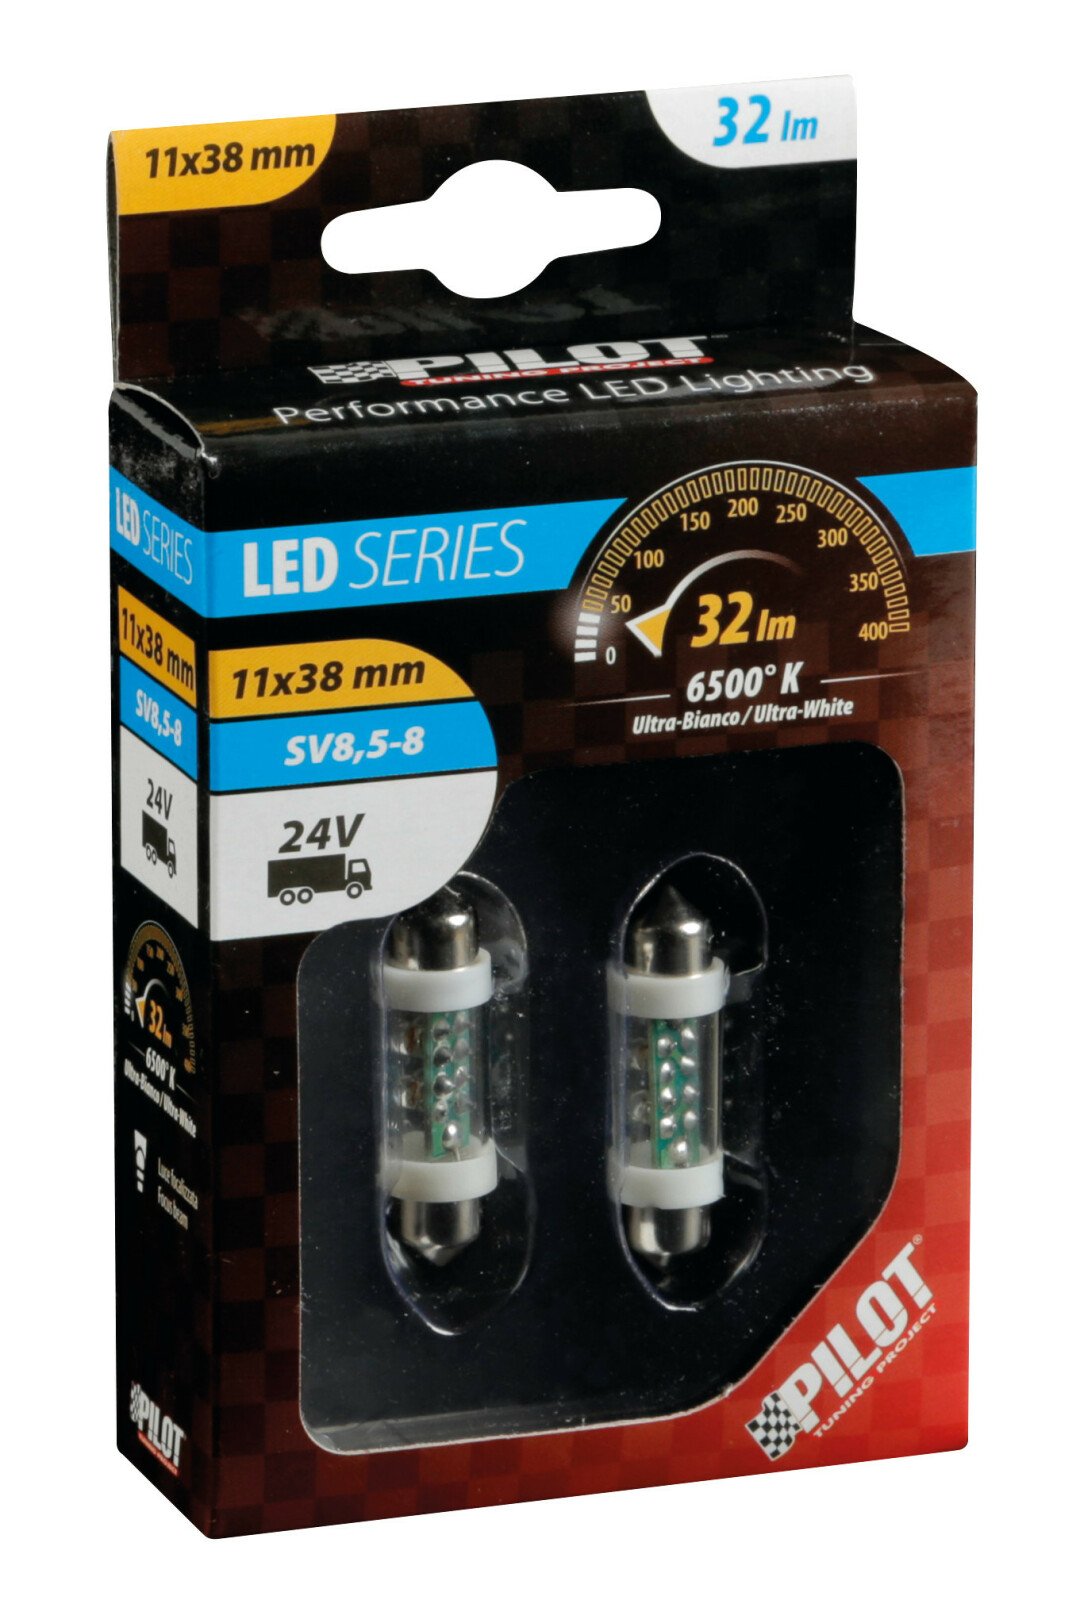 Bec tip LED 24V sofit cu 4 leduri 11x38mm SV8,5-8 2buc - Alb thumb